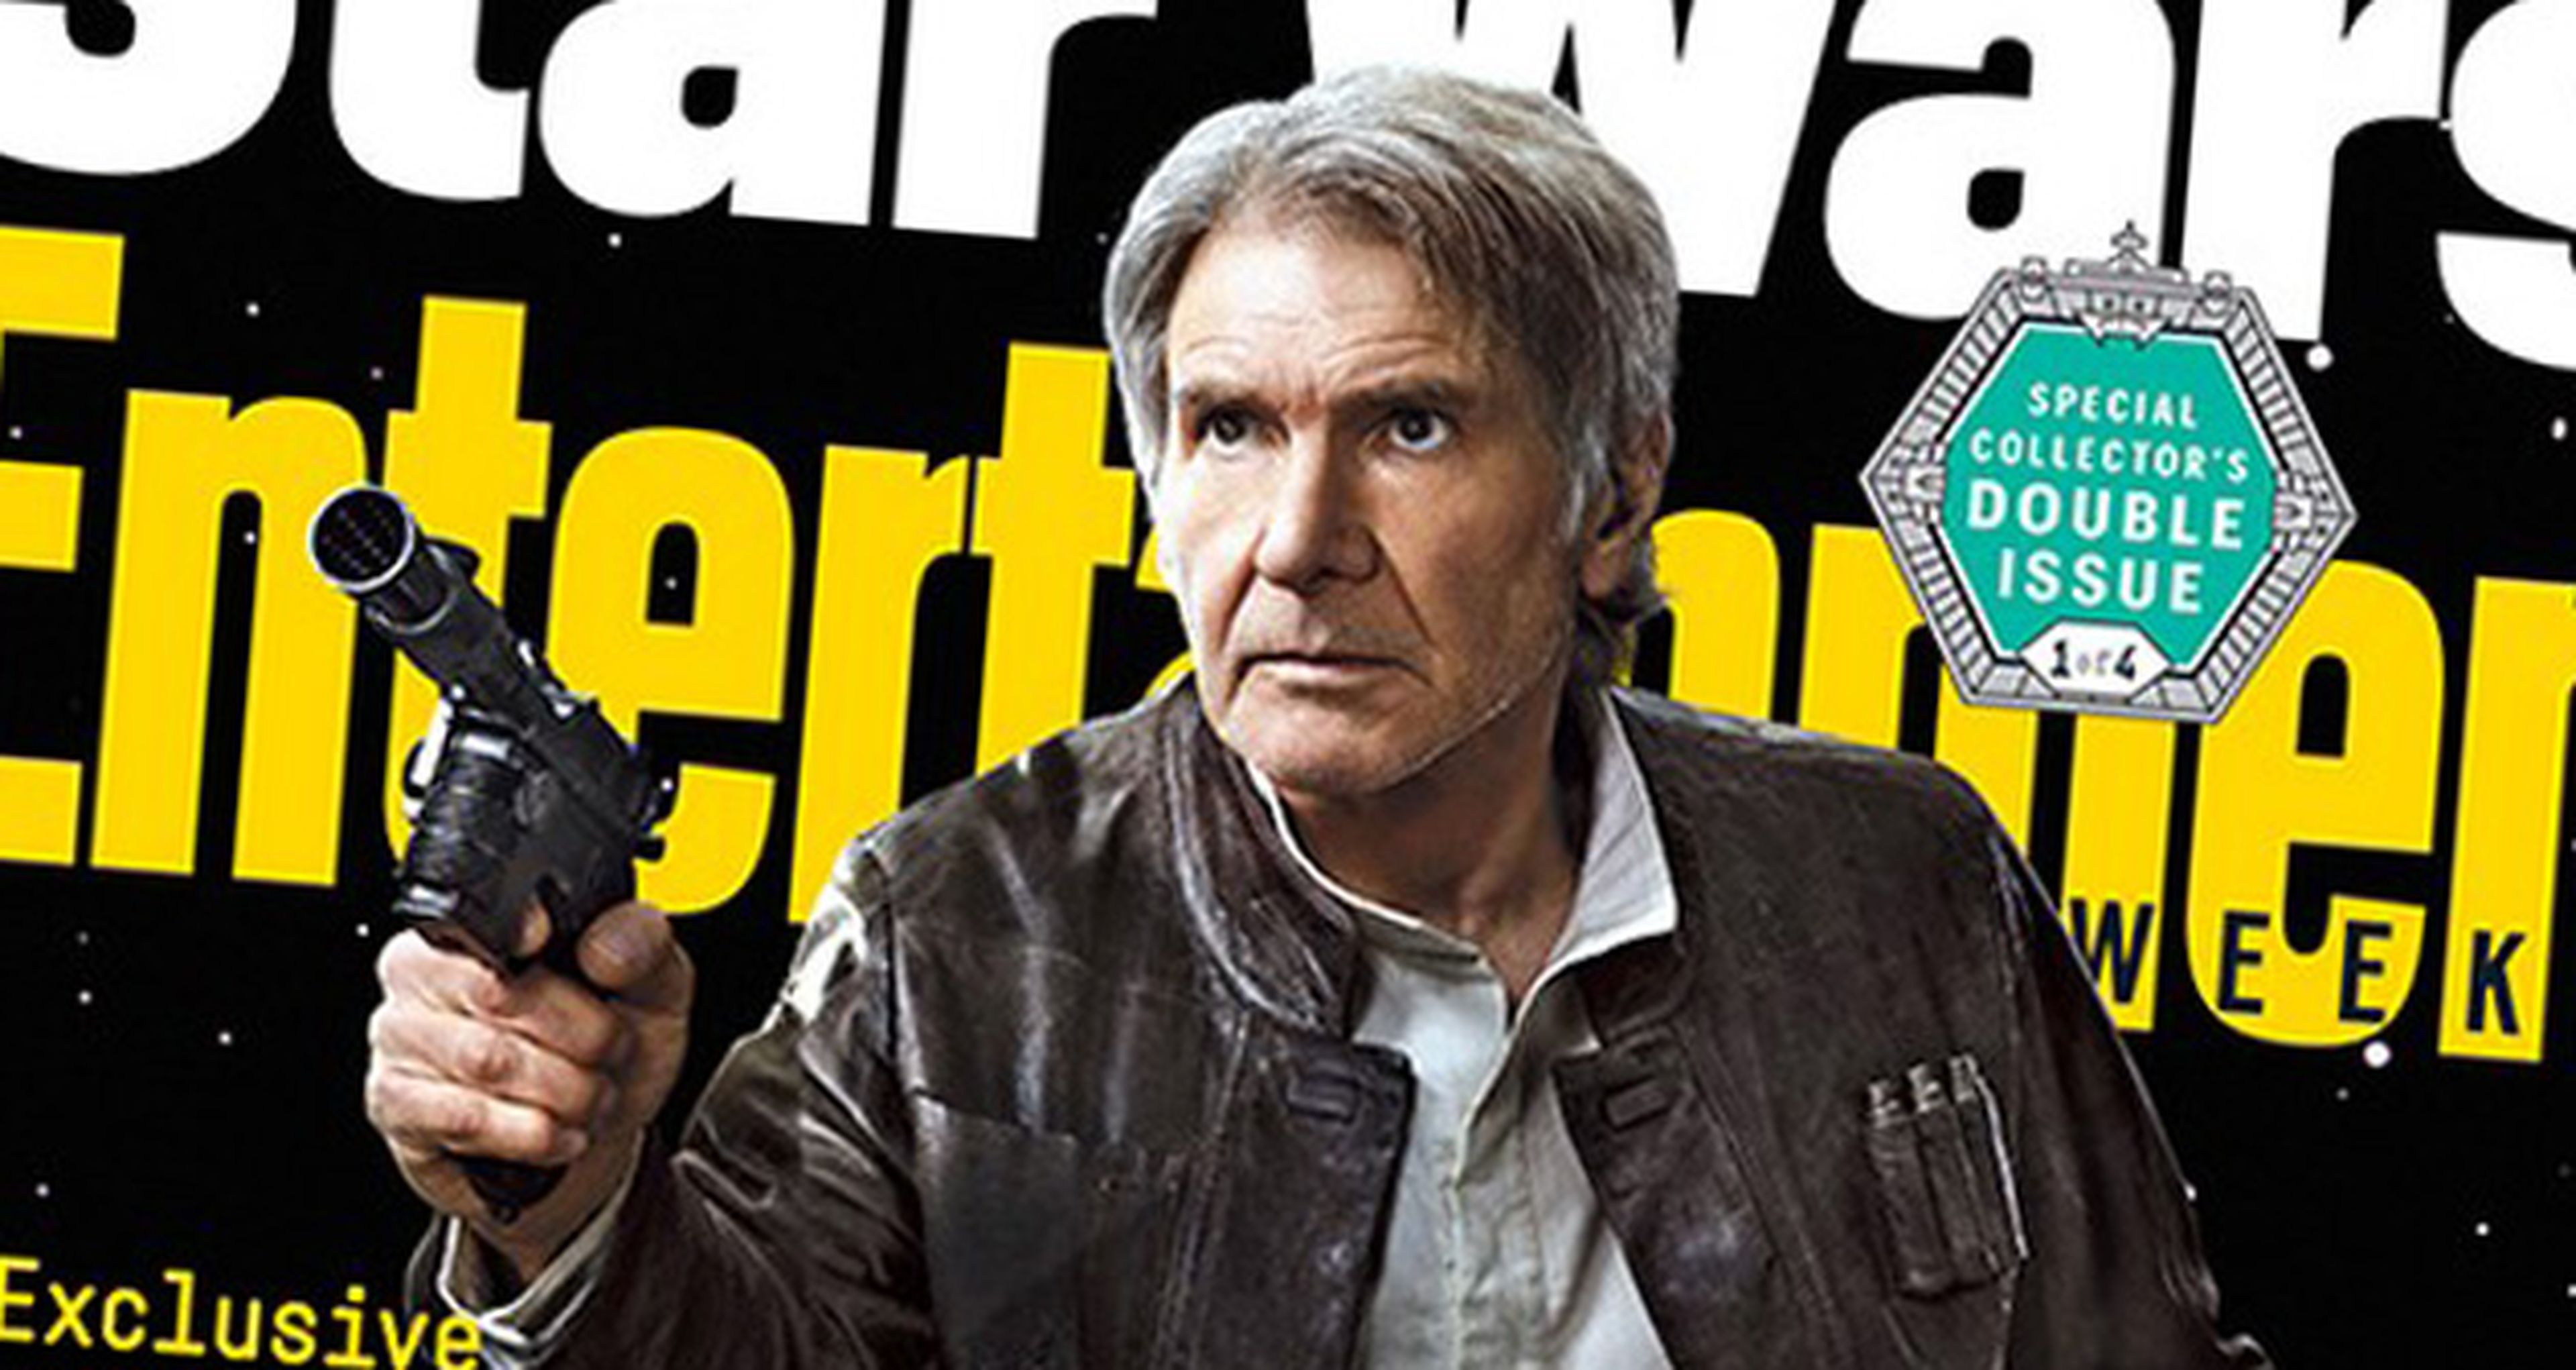 Star Wars: El Despertar de la Fuerza: Portadas de Entertainment Weekly